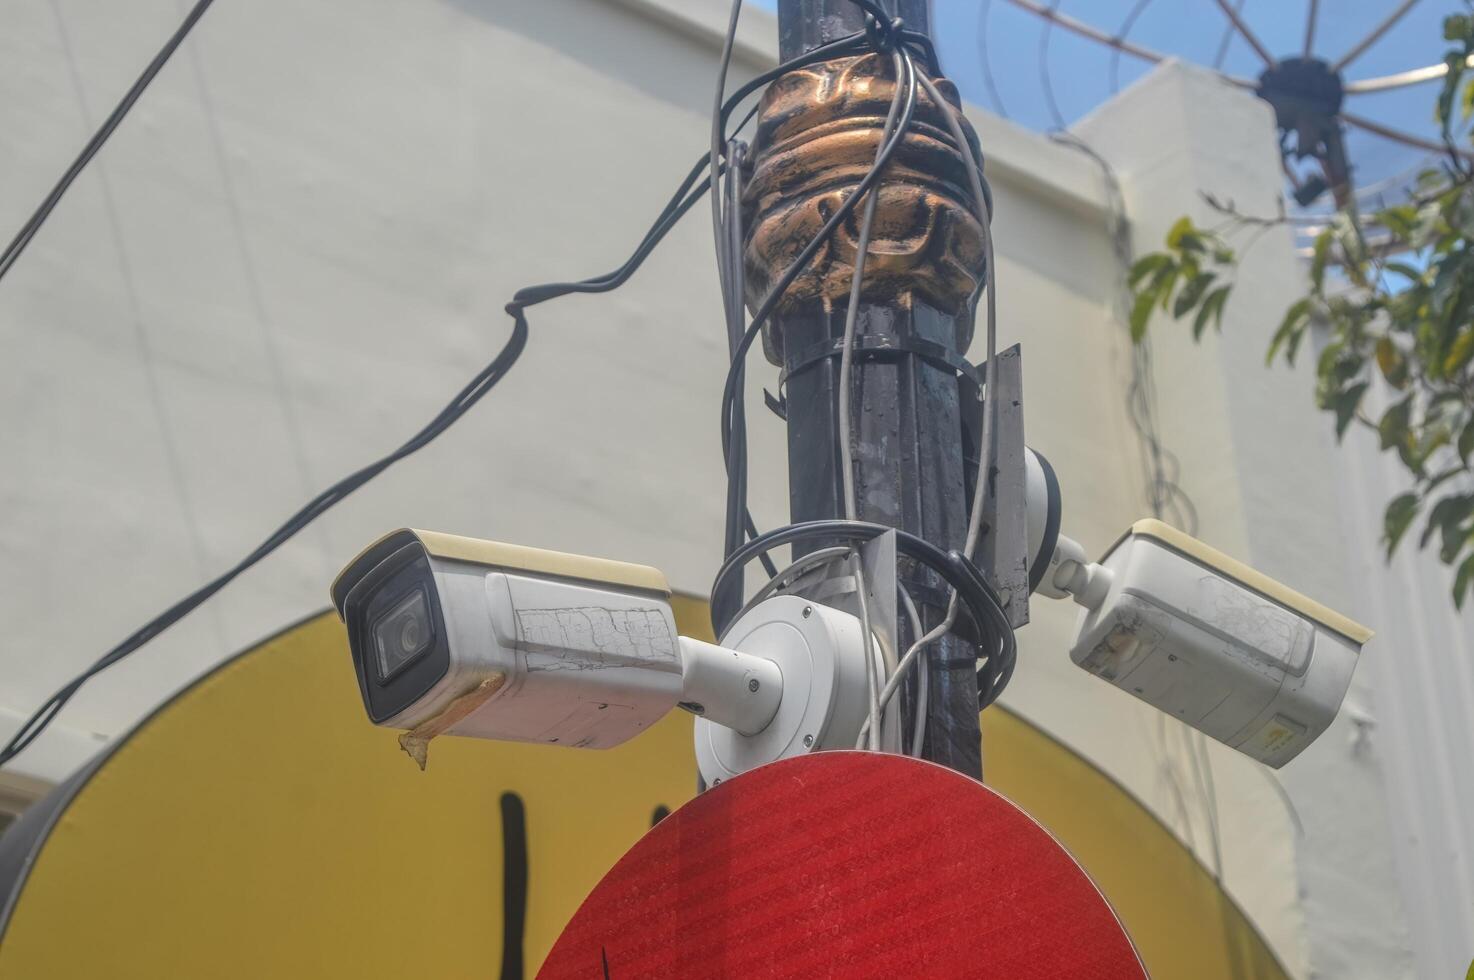 uma cctv vigilância Câmera em anexo para a eletricidade pólo é monitoramento a cidade foto